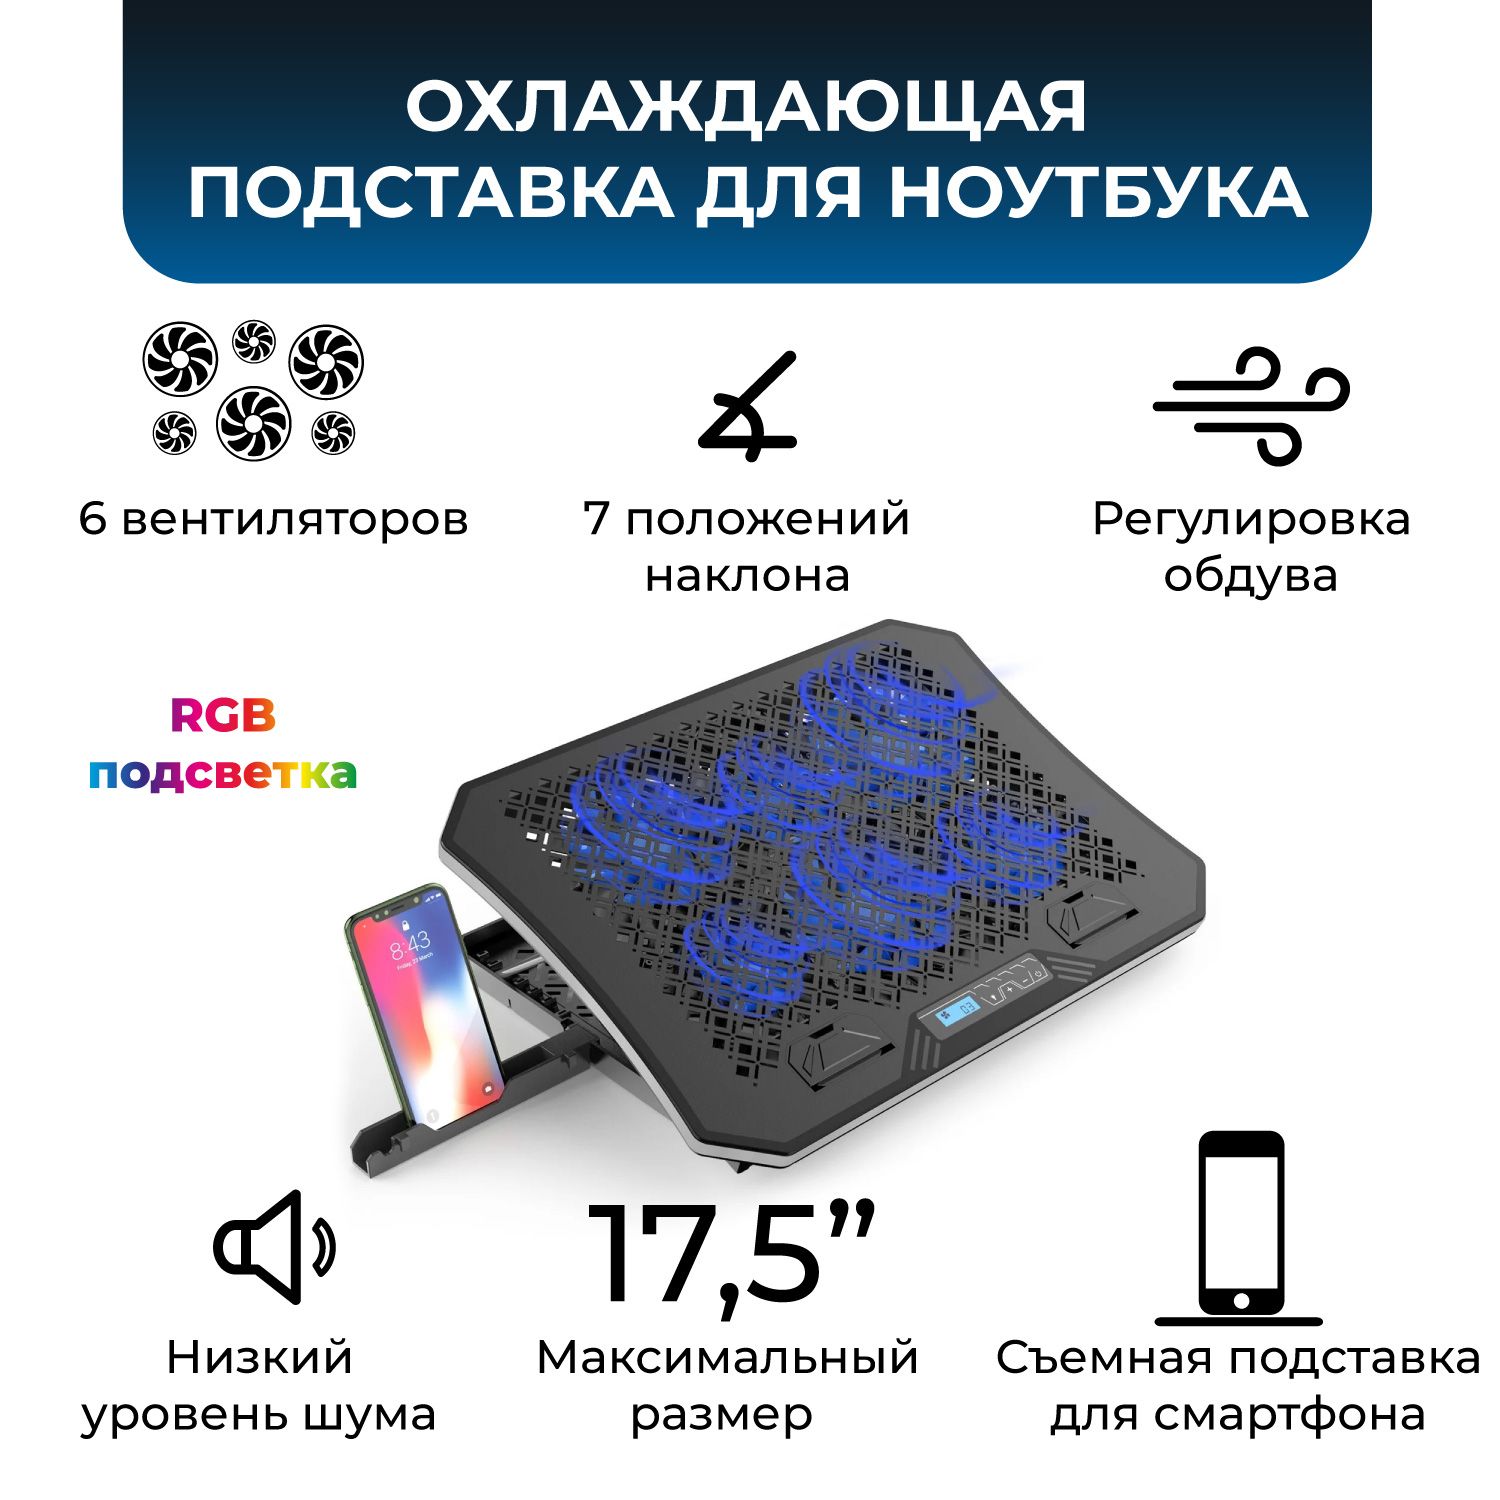 Охлаждающая подставка под ноутбук - выгодная цена на покупку в Минске